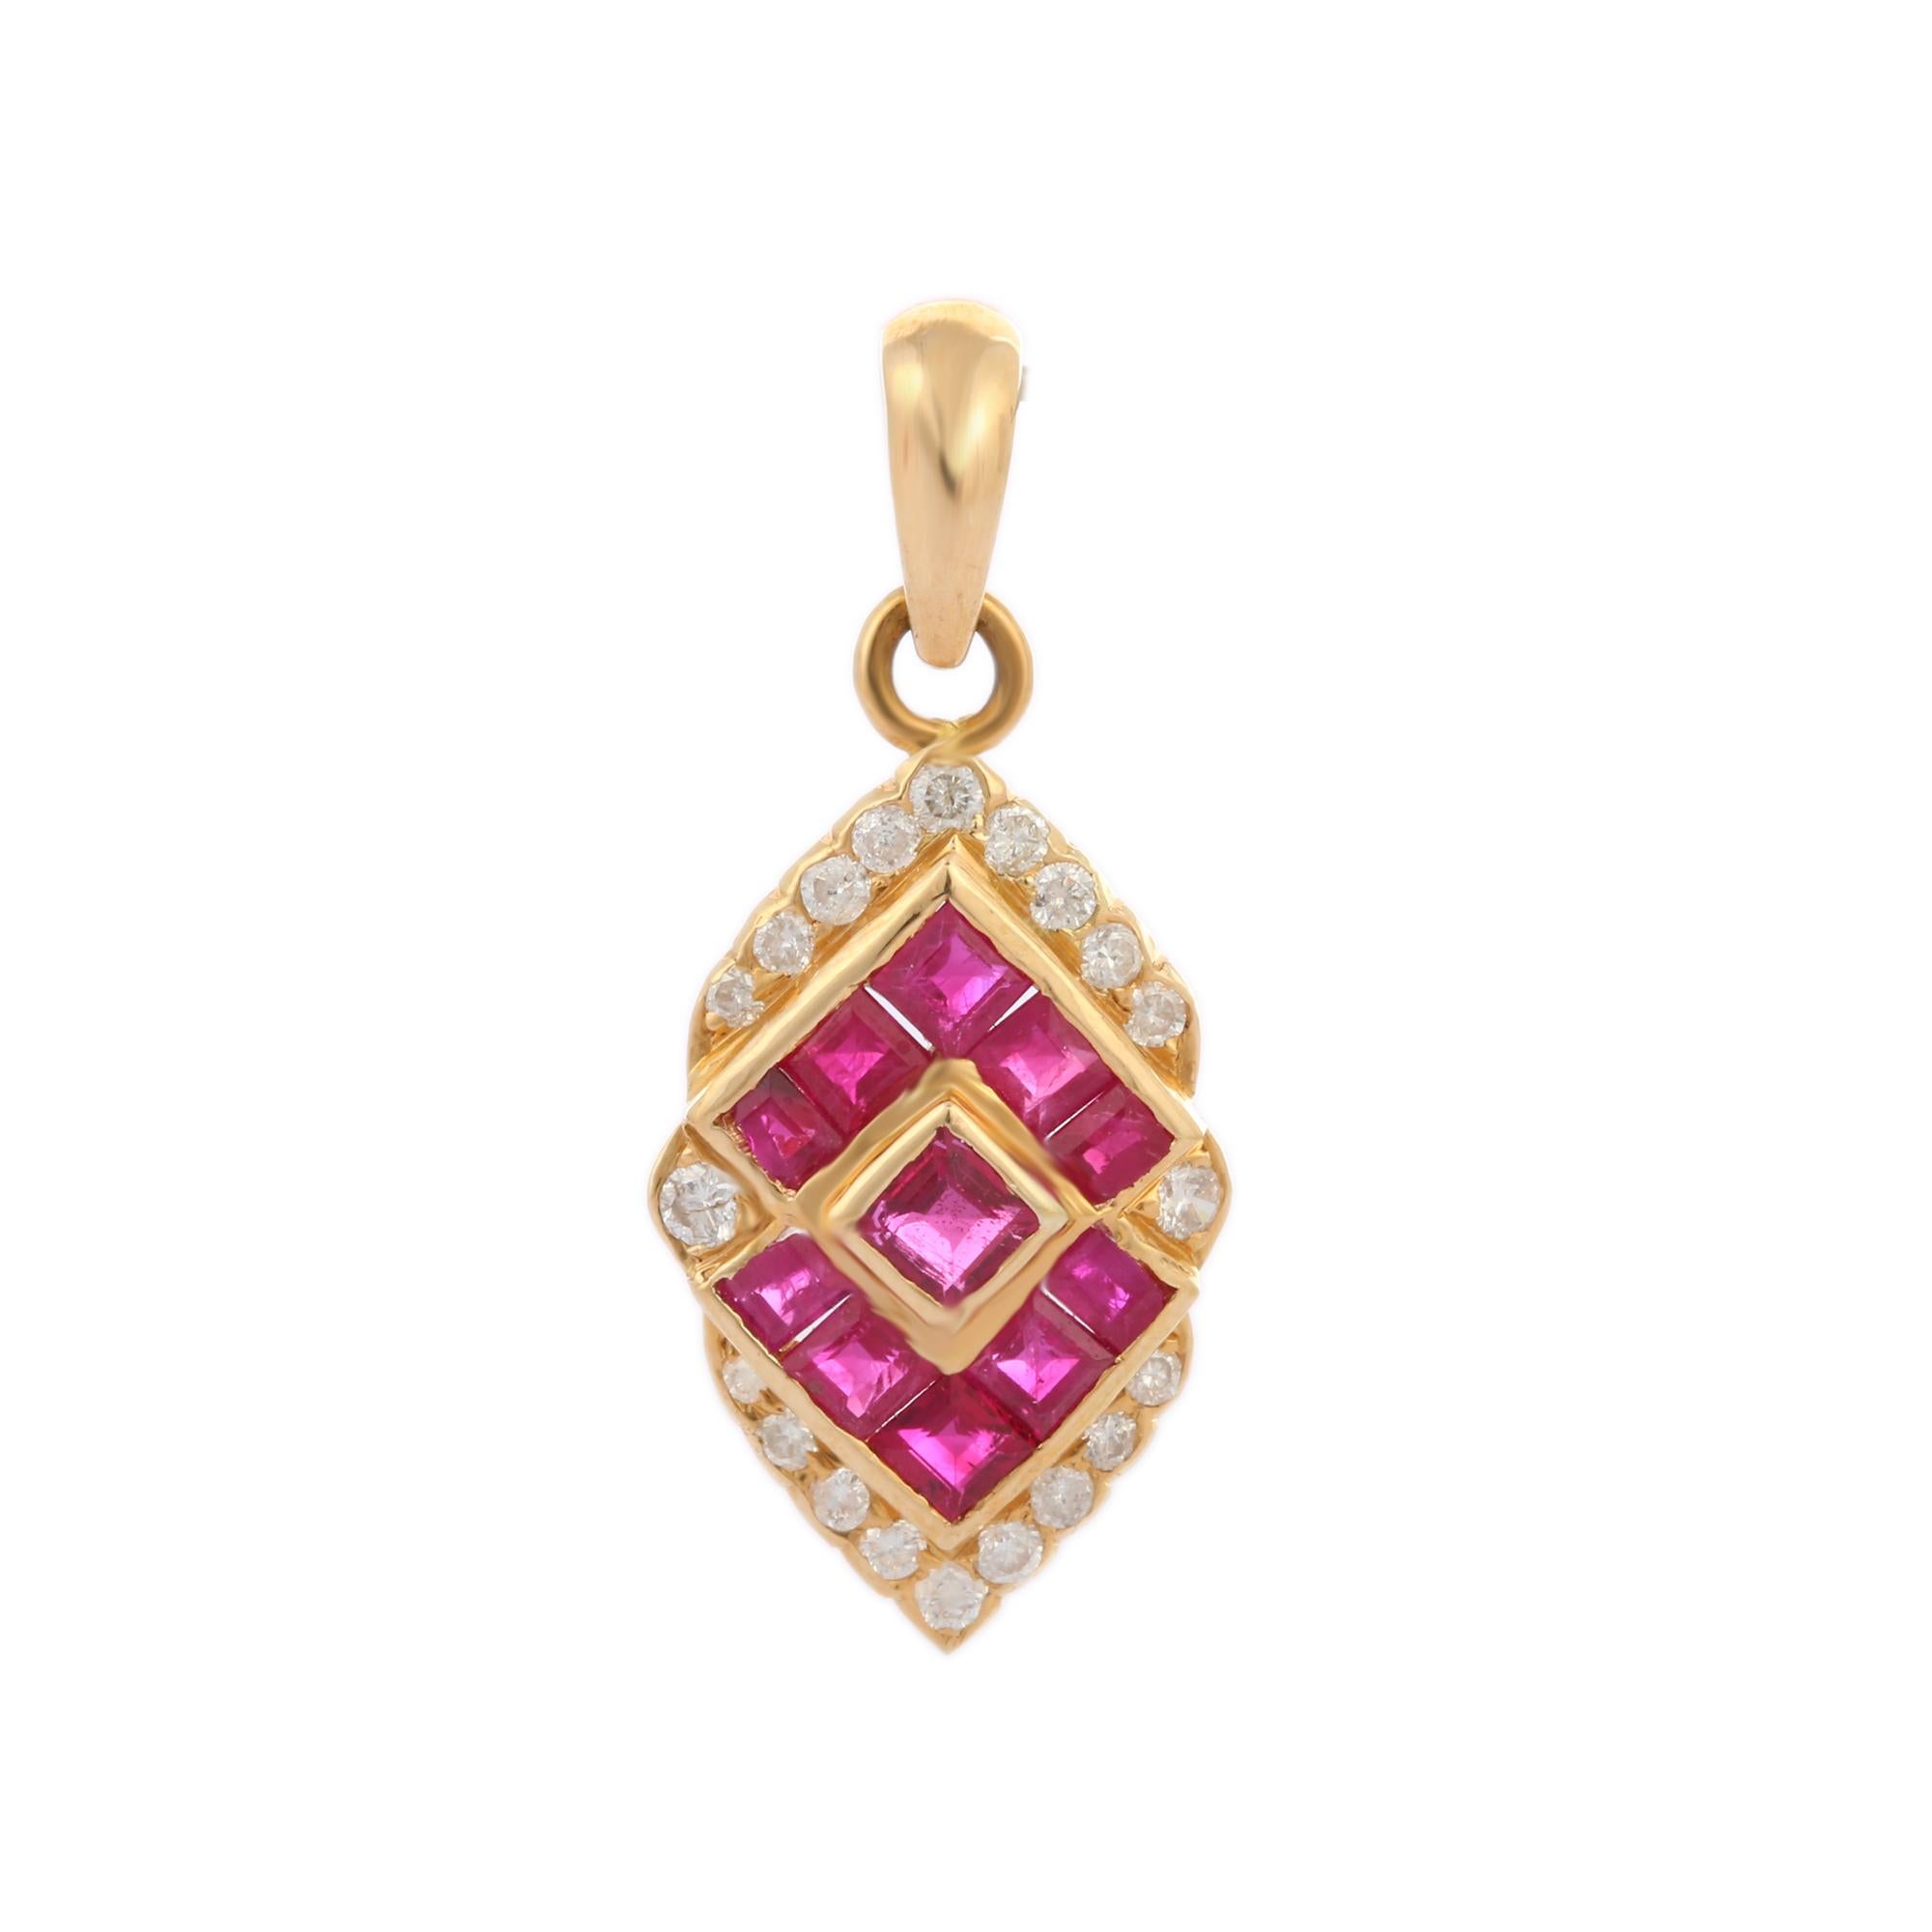 Pendentif rubis-diamant en or 18 carats. Elle est ornée d'un rubis taillé en carré et serti de diamants, qui apporte une touche décente à votre look. Les pendentifs sont portés ou offerts pour représenter l'amour et les promesses. C'est un bijou